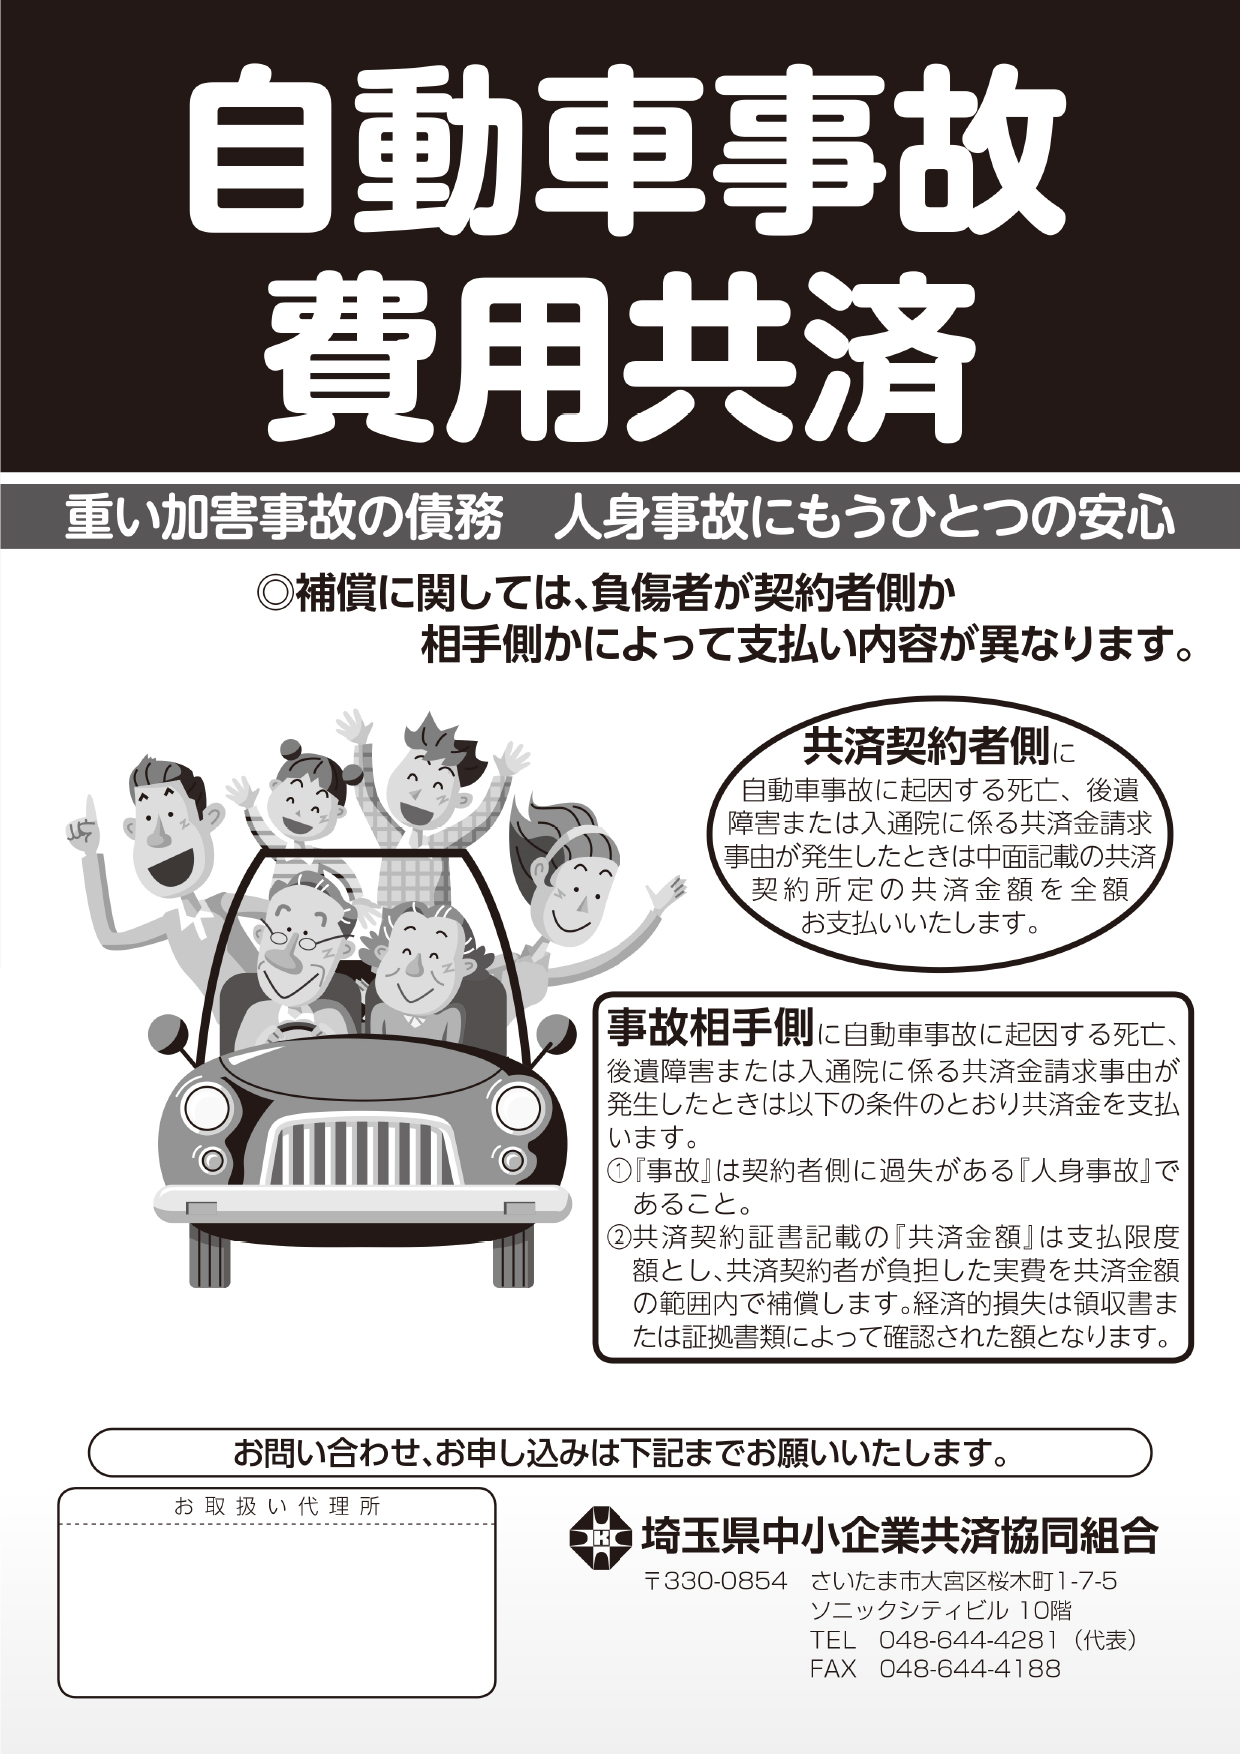 さいたま共済の自動車事故費用共済パンフレット